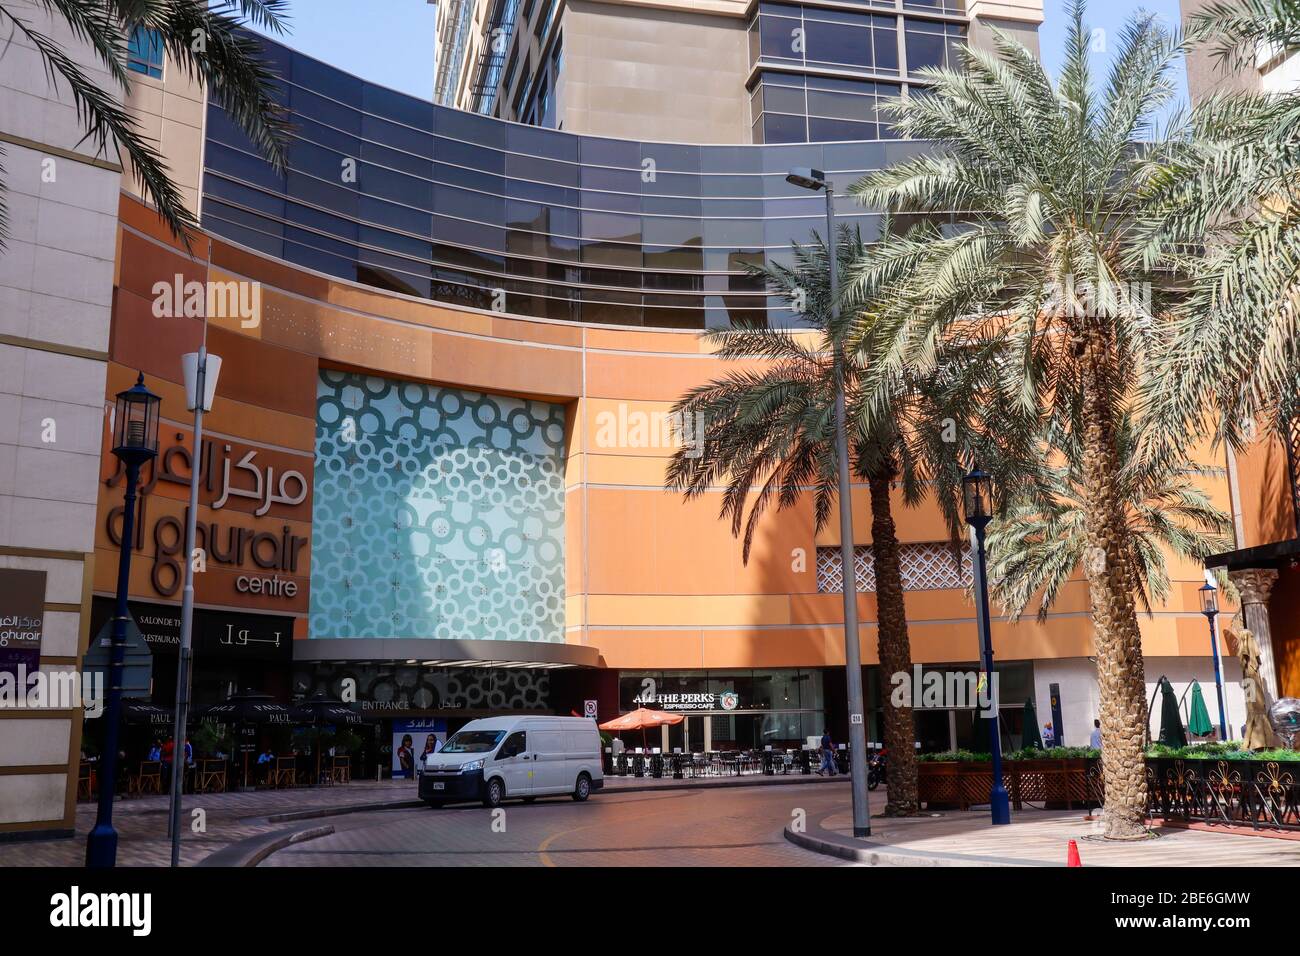 Al Ghurair shopping mall, Dubai Stock Photo